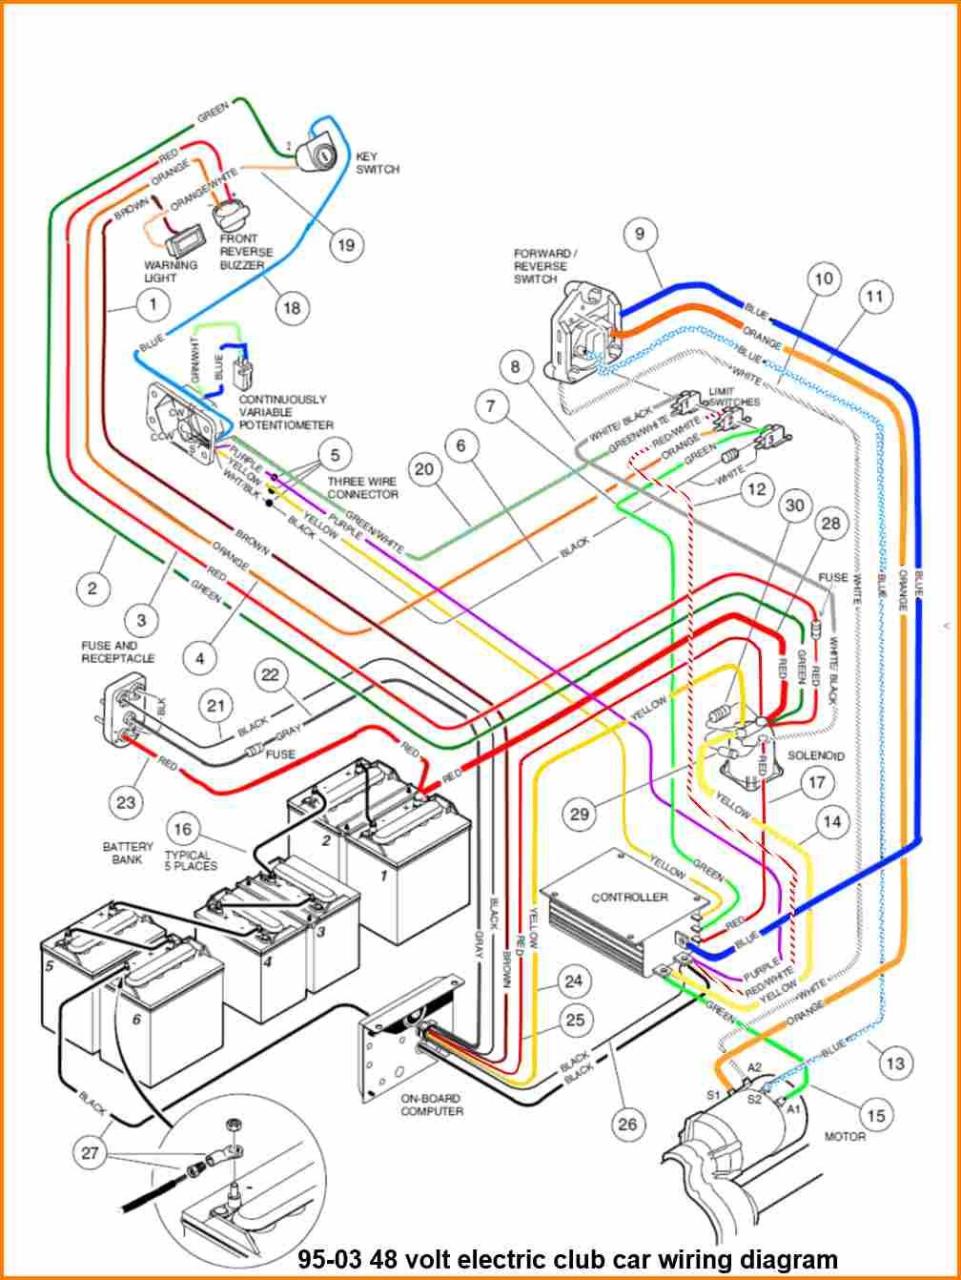 Honda Fit Wiring Diagram